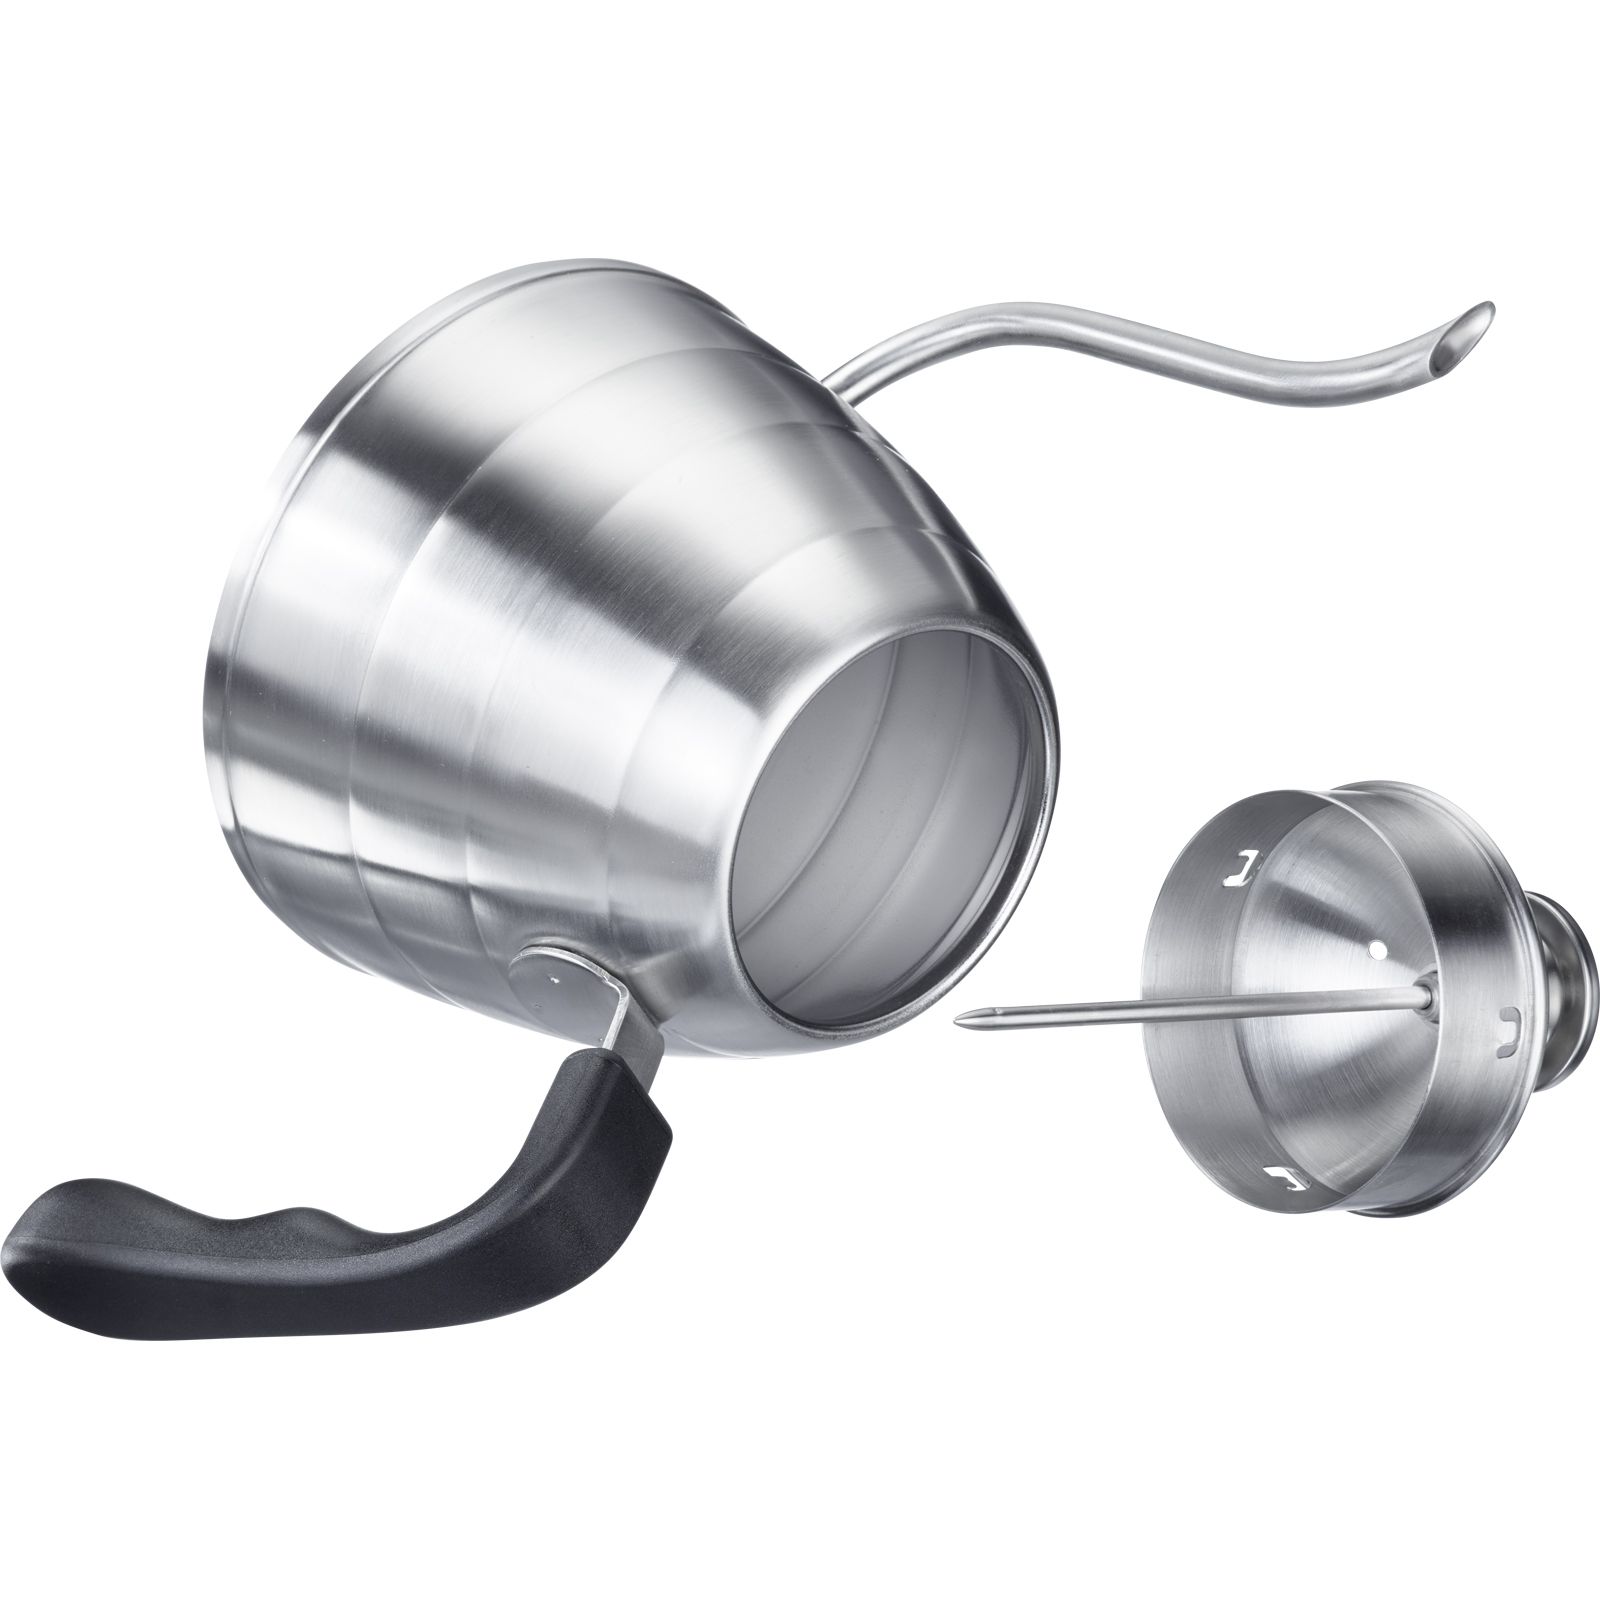 Schwanenhalskessel mit Thermometer »Brasilia Plus« ermöglicht ein präzises, kontrolliertes Gießen  ideal für sorgfältig aufgebrühten Filterkaffee 0,8